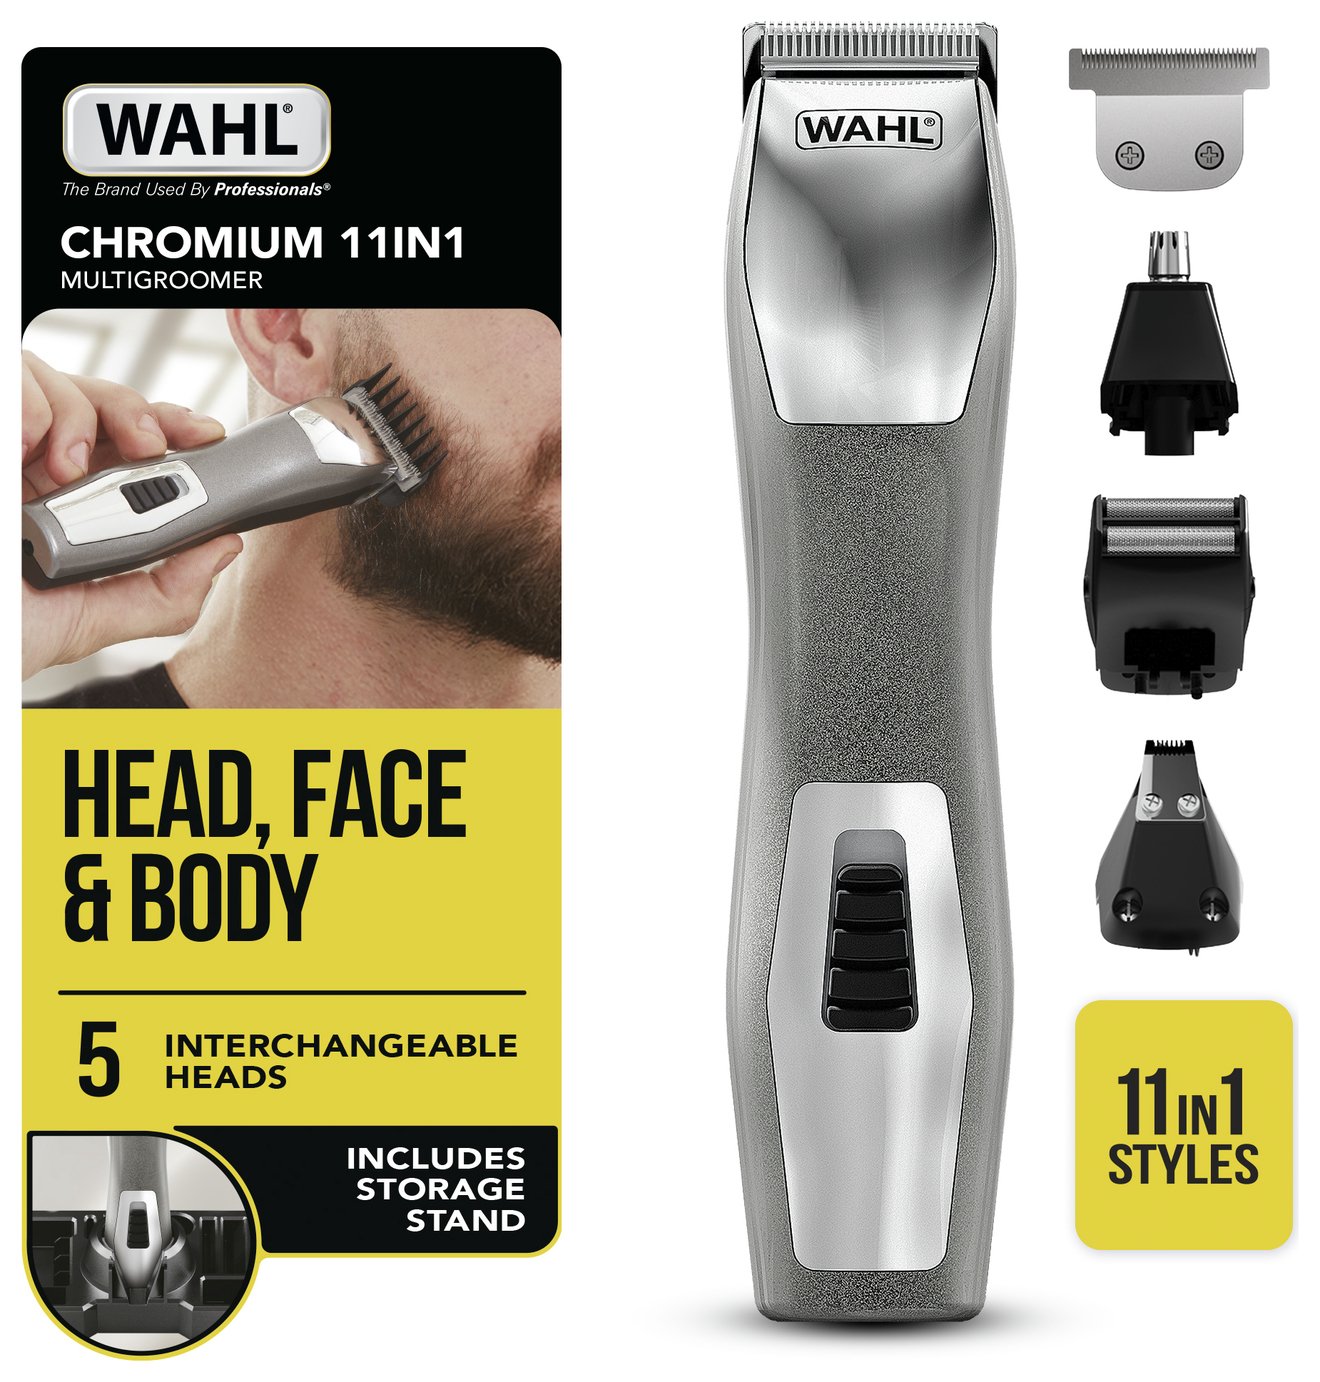 wahl hair clipper kit